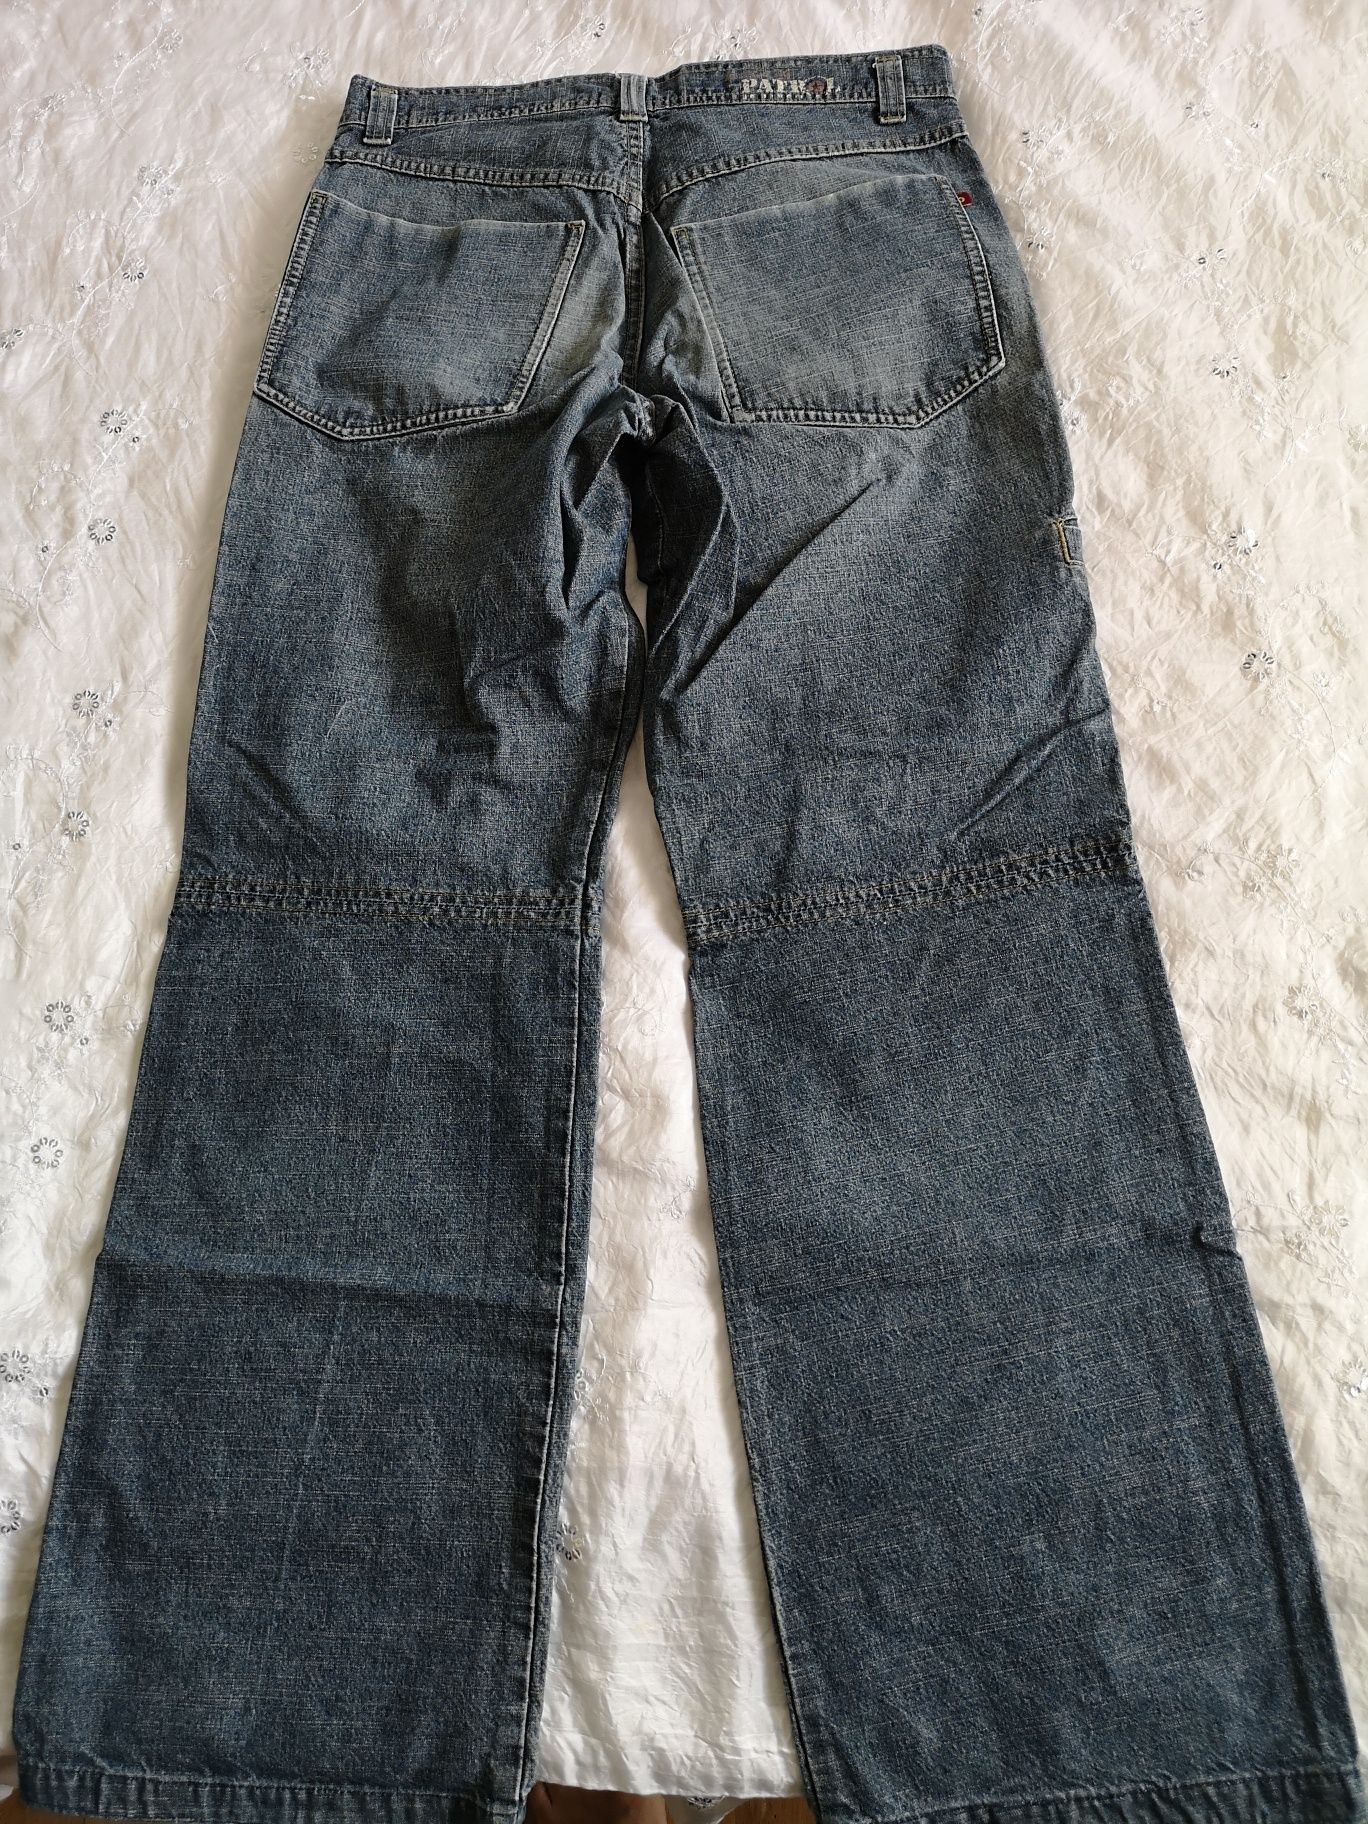 Spodnie jeans męskie Patrol Prato 31/32, sprzedam